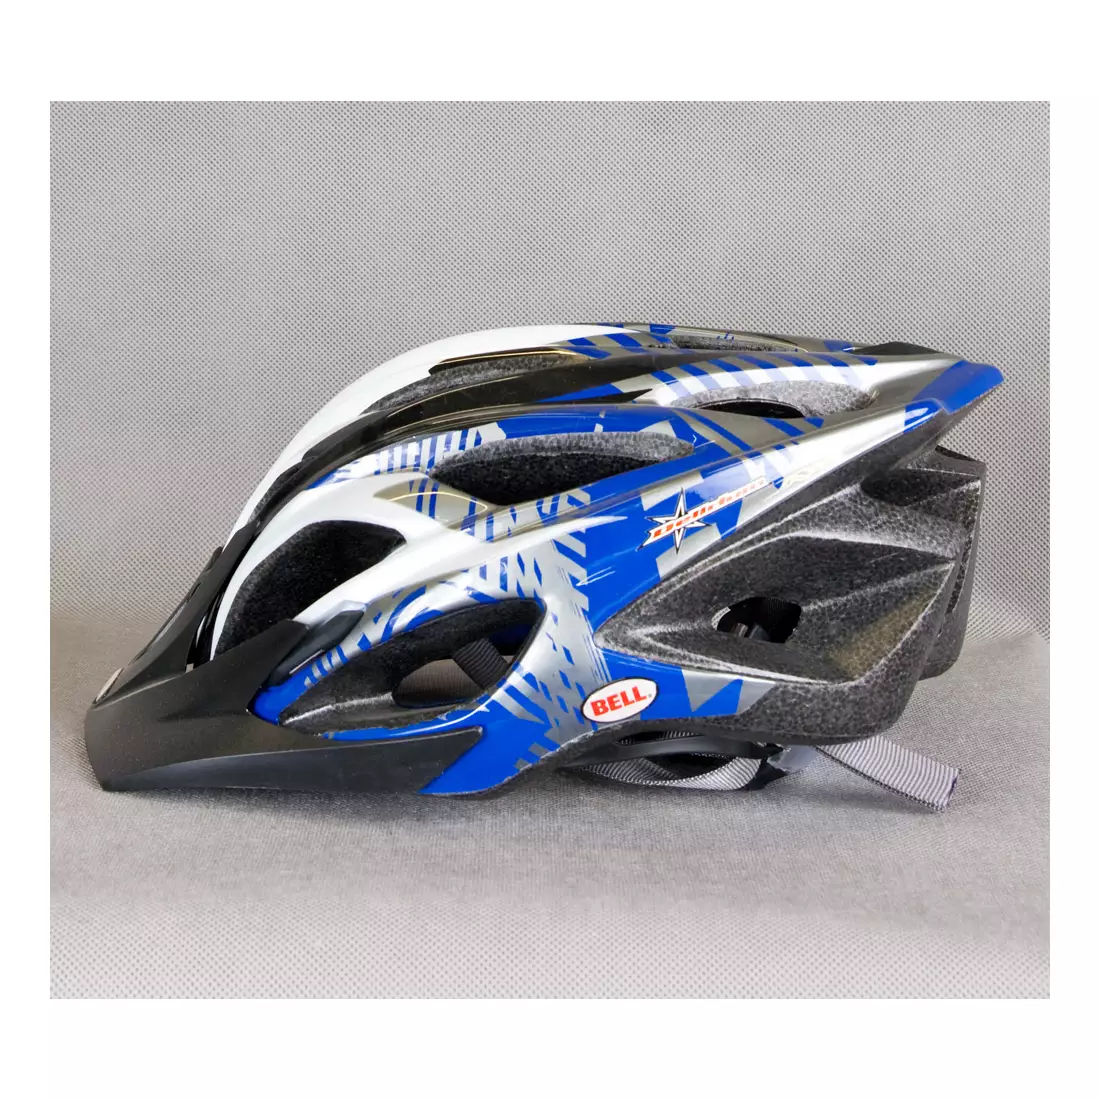 BELL - DELIRIUM blue-titanium bicycle helmet